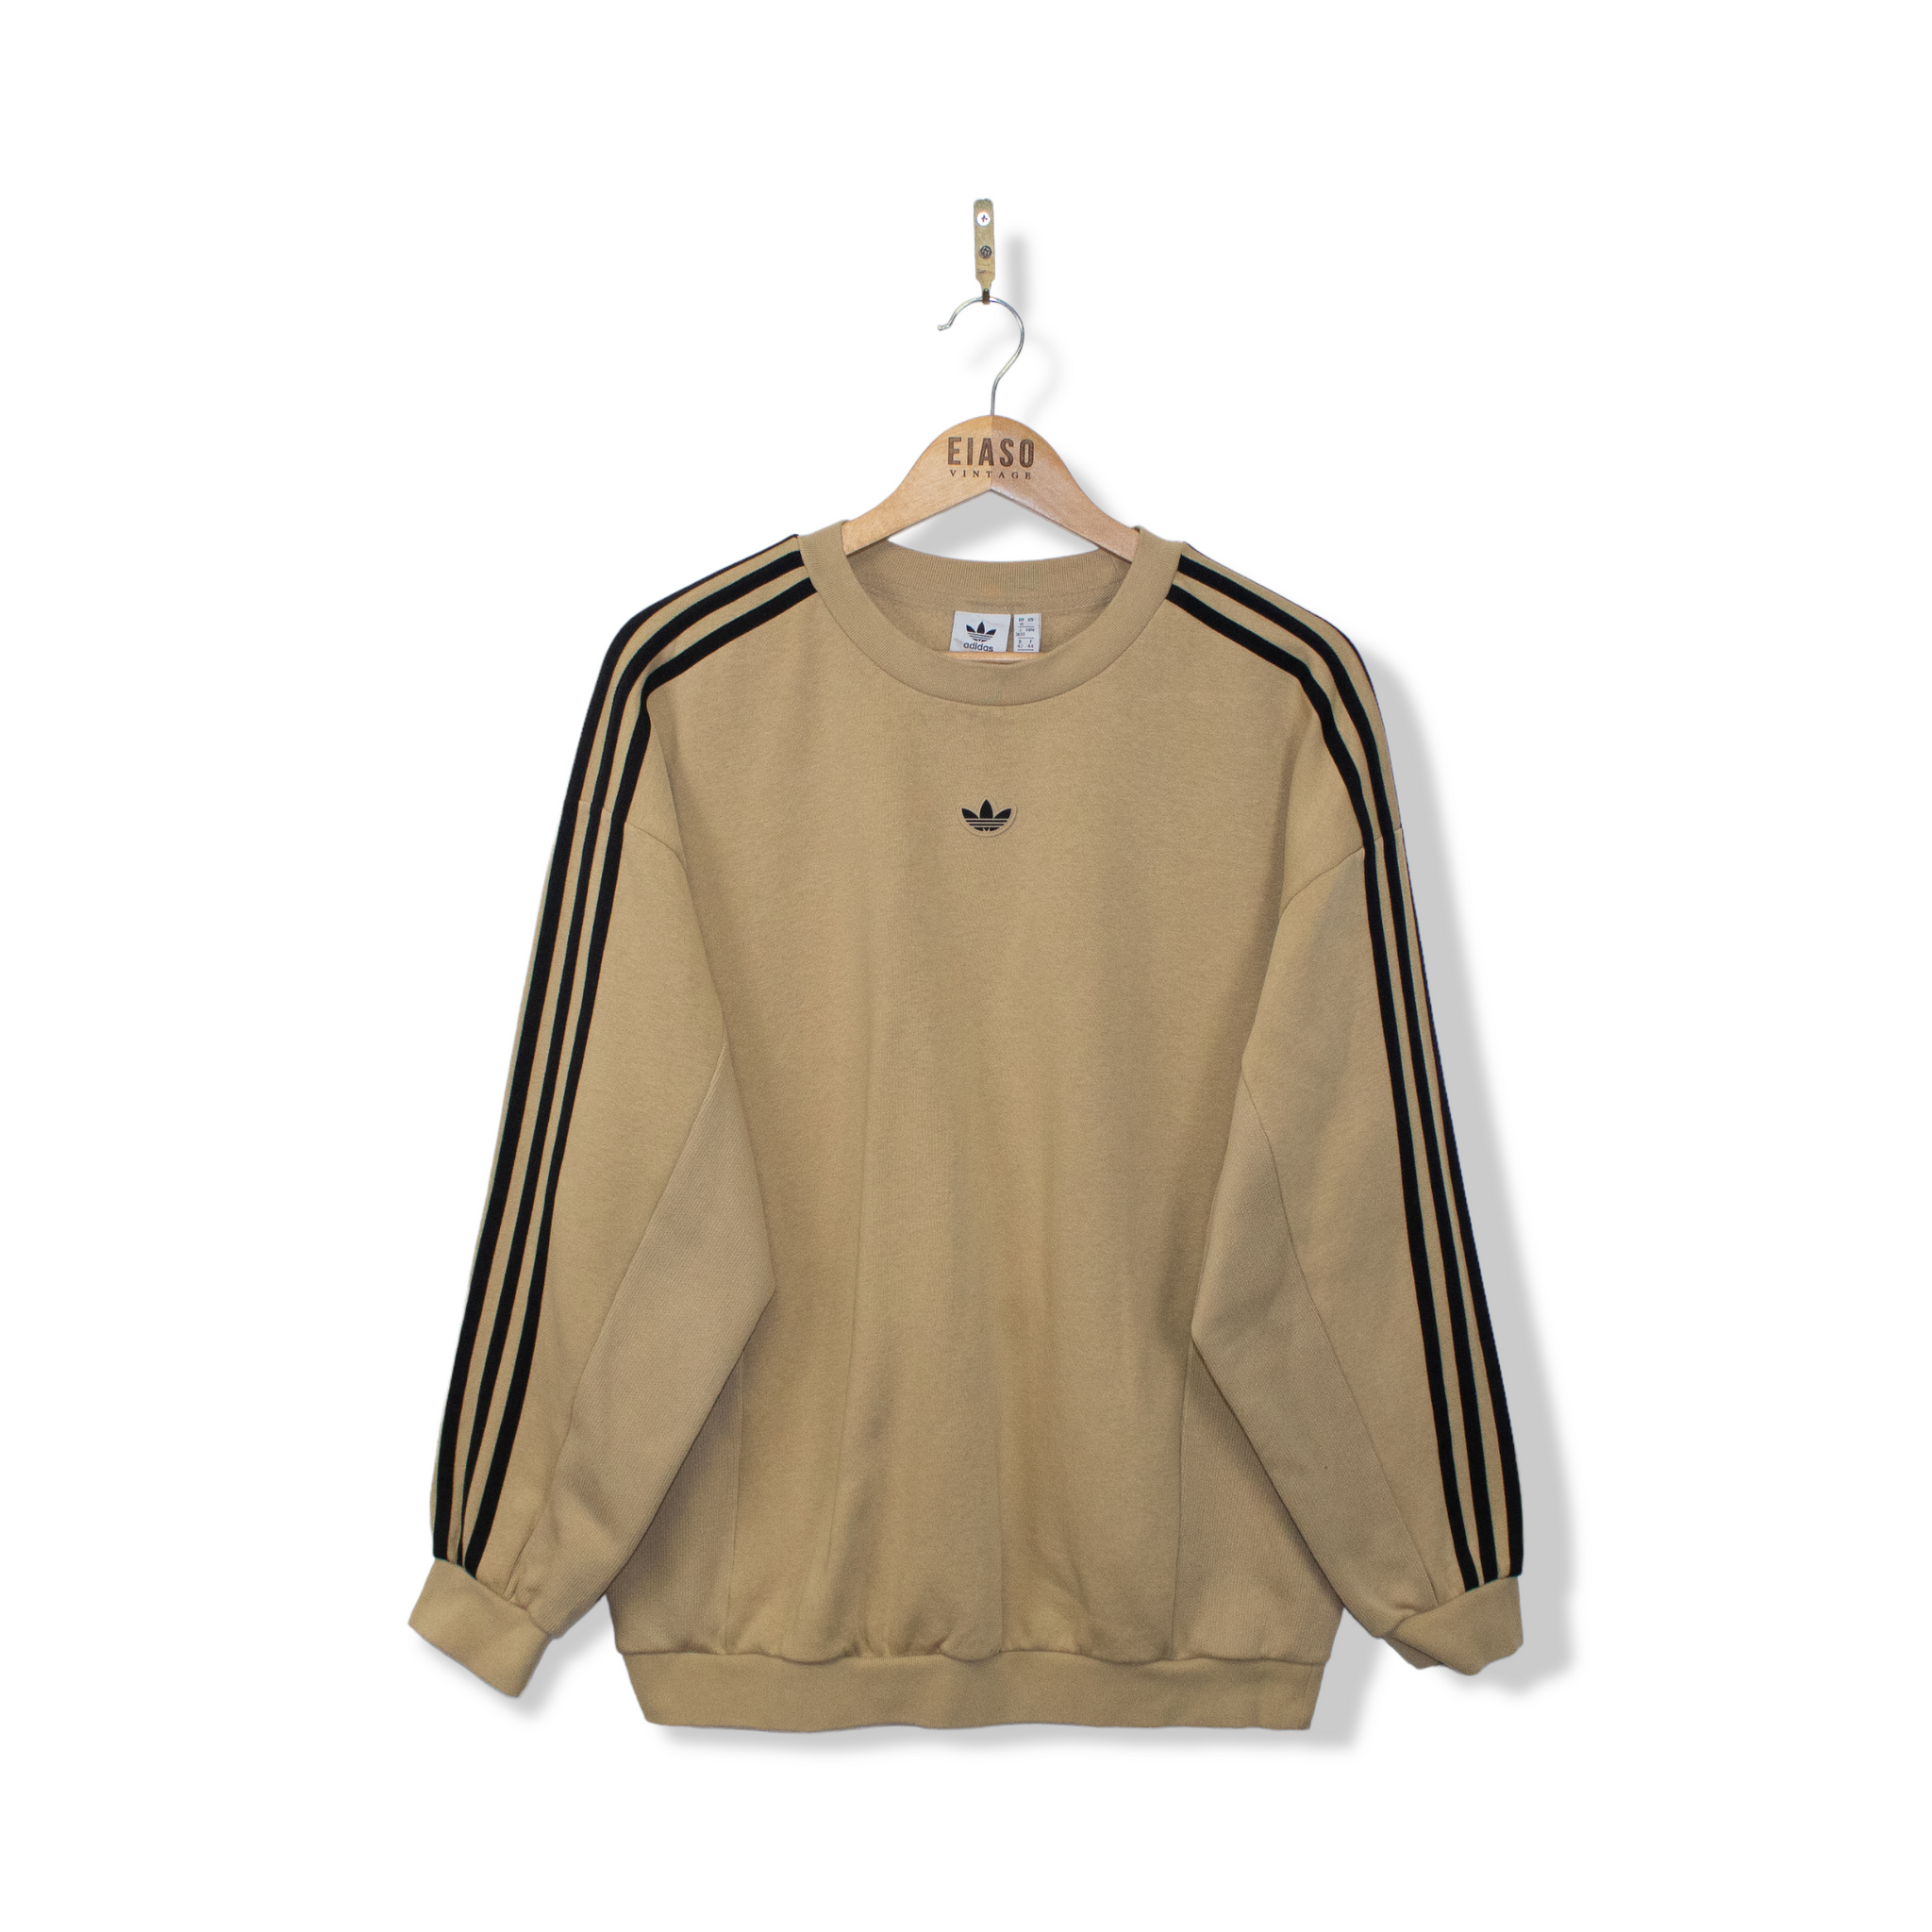 Adidas Originals Sweatshirt Beige – EIASO VINTAGE